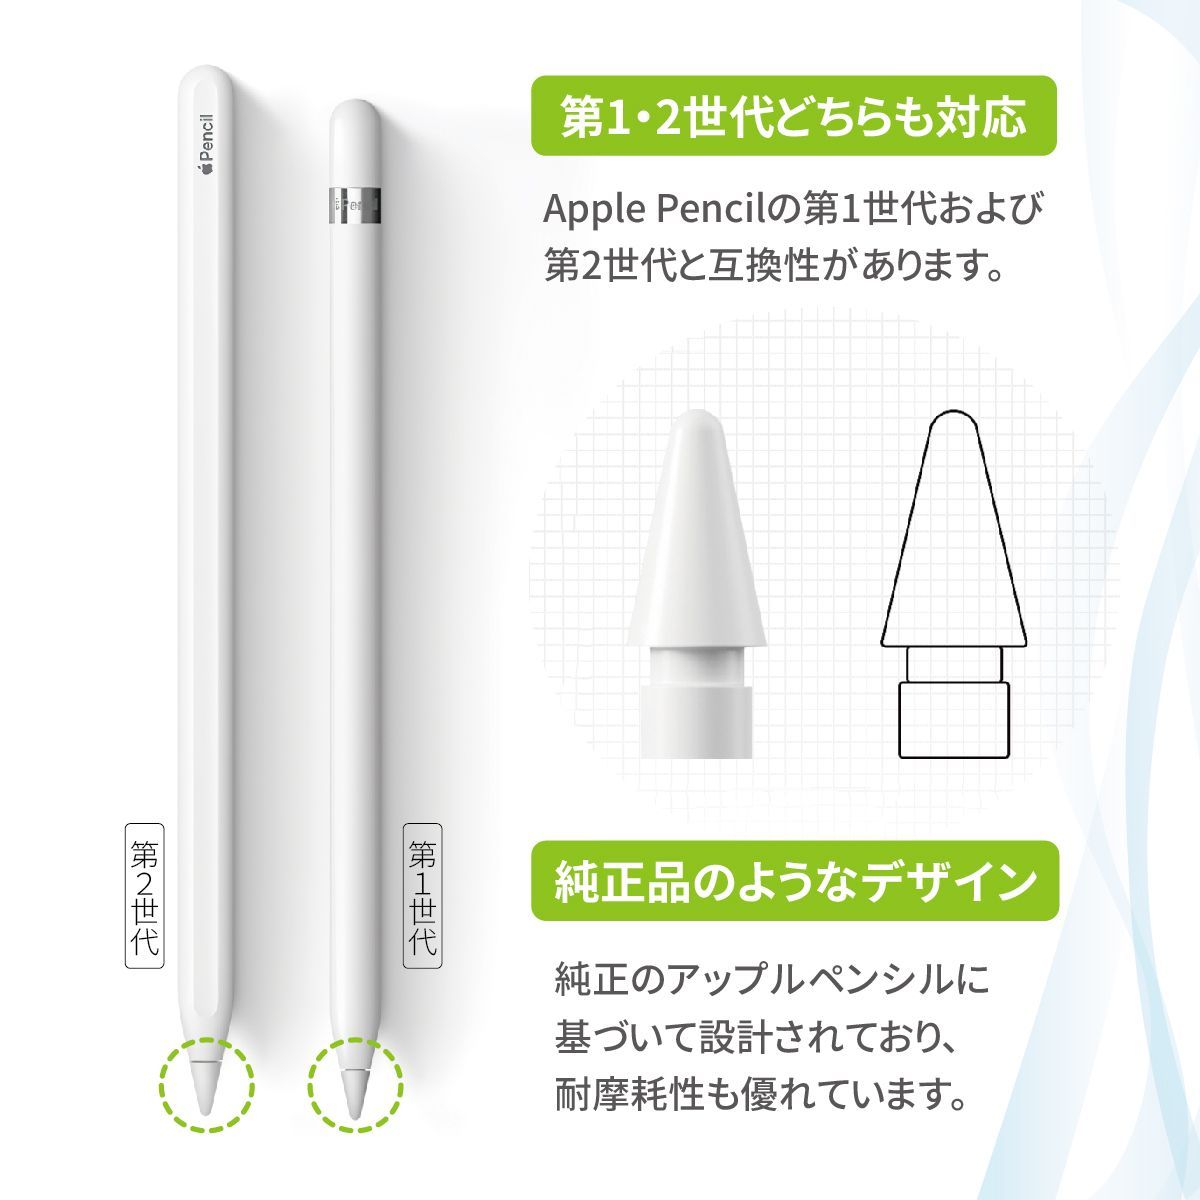 第一世代 純正Apple Pencil - iPadアクセサリー